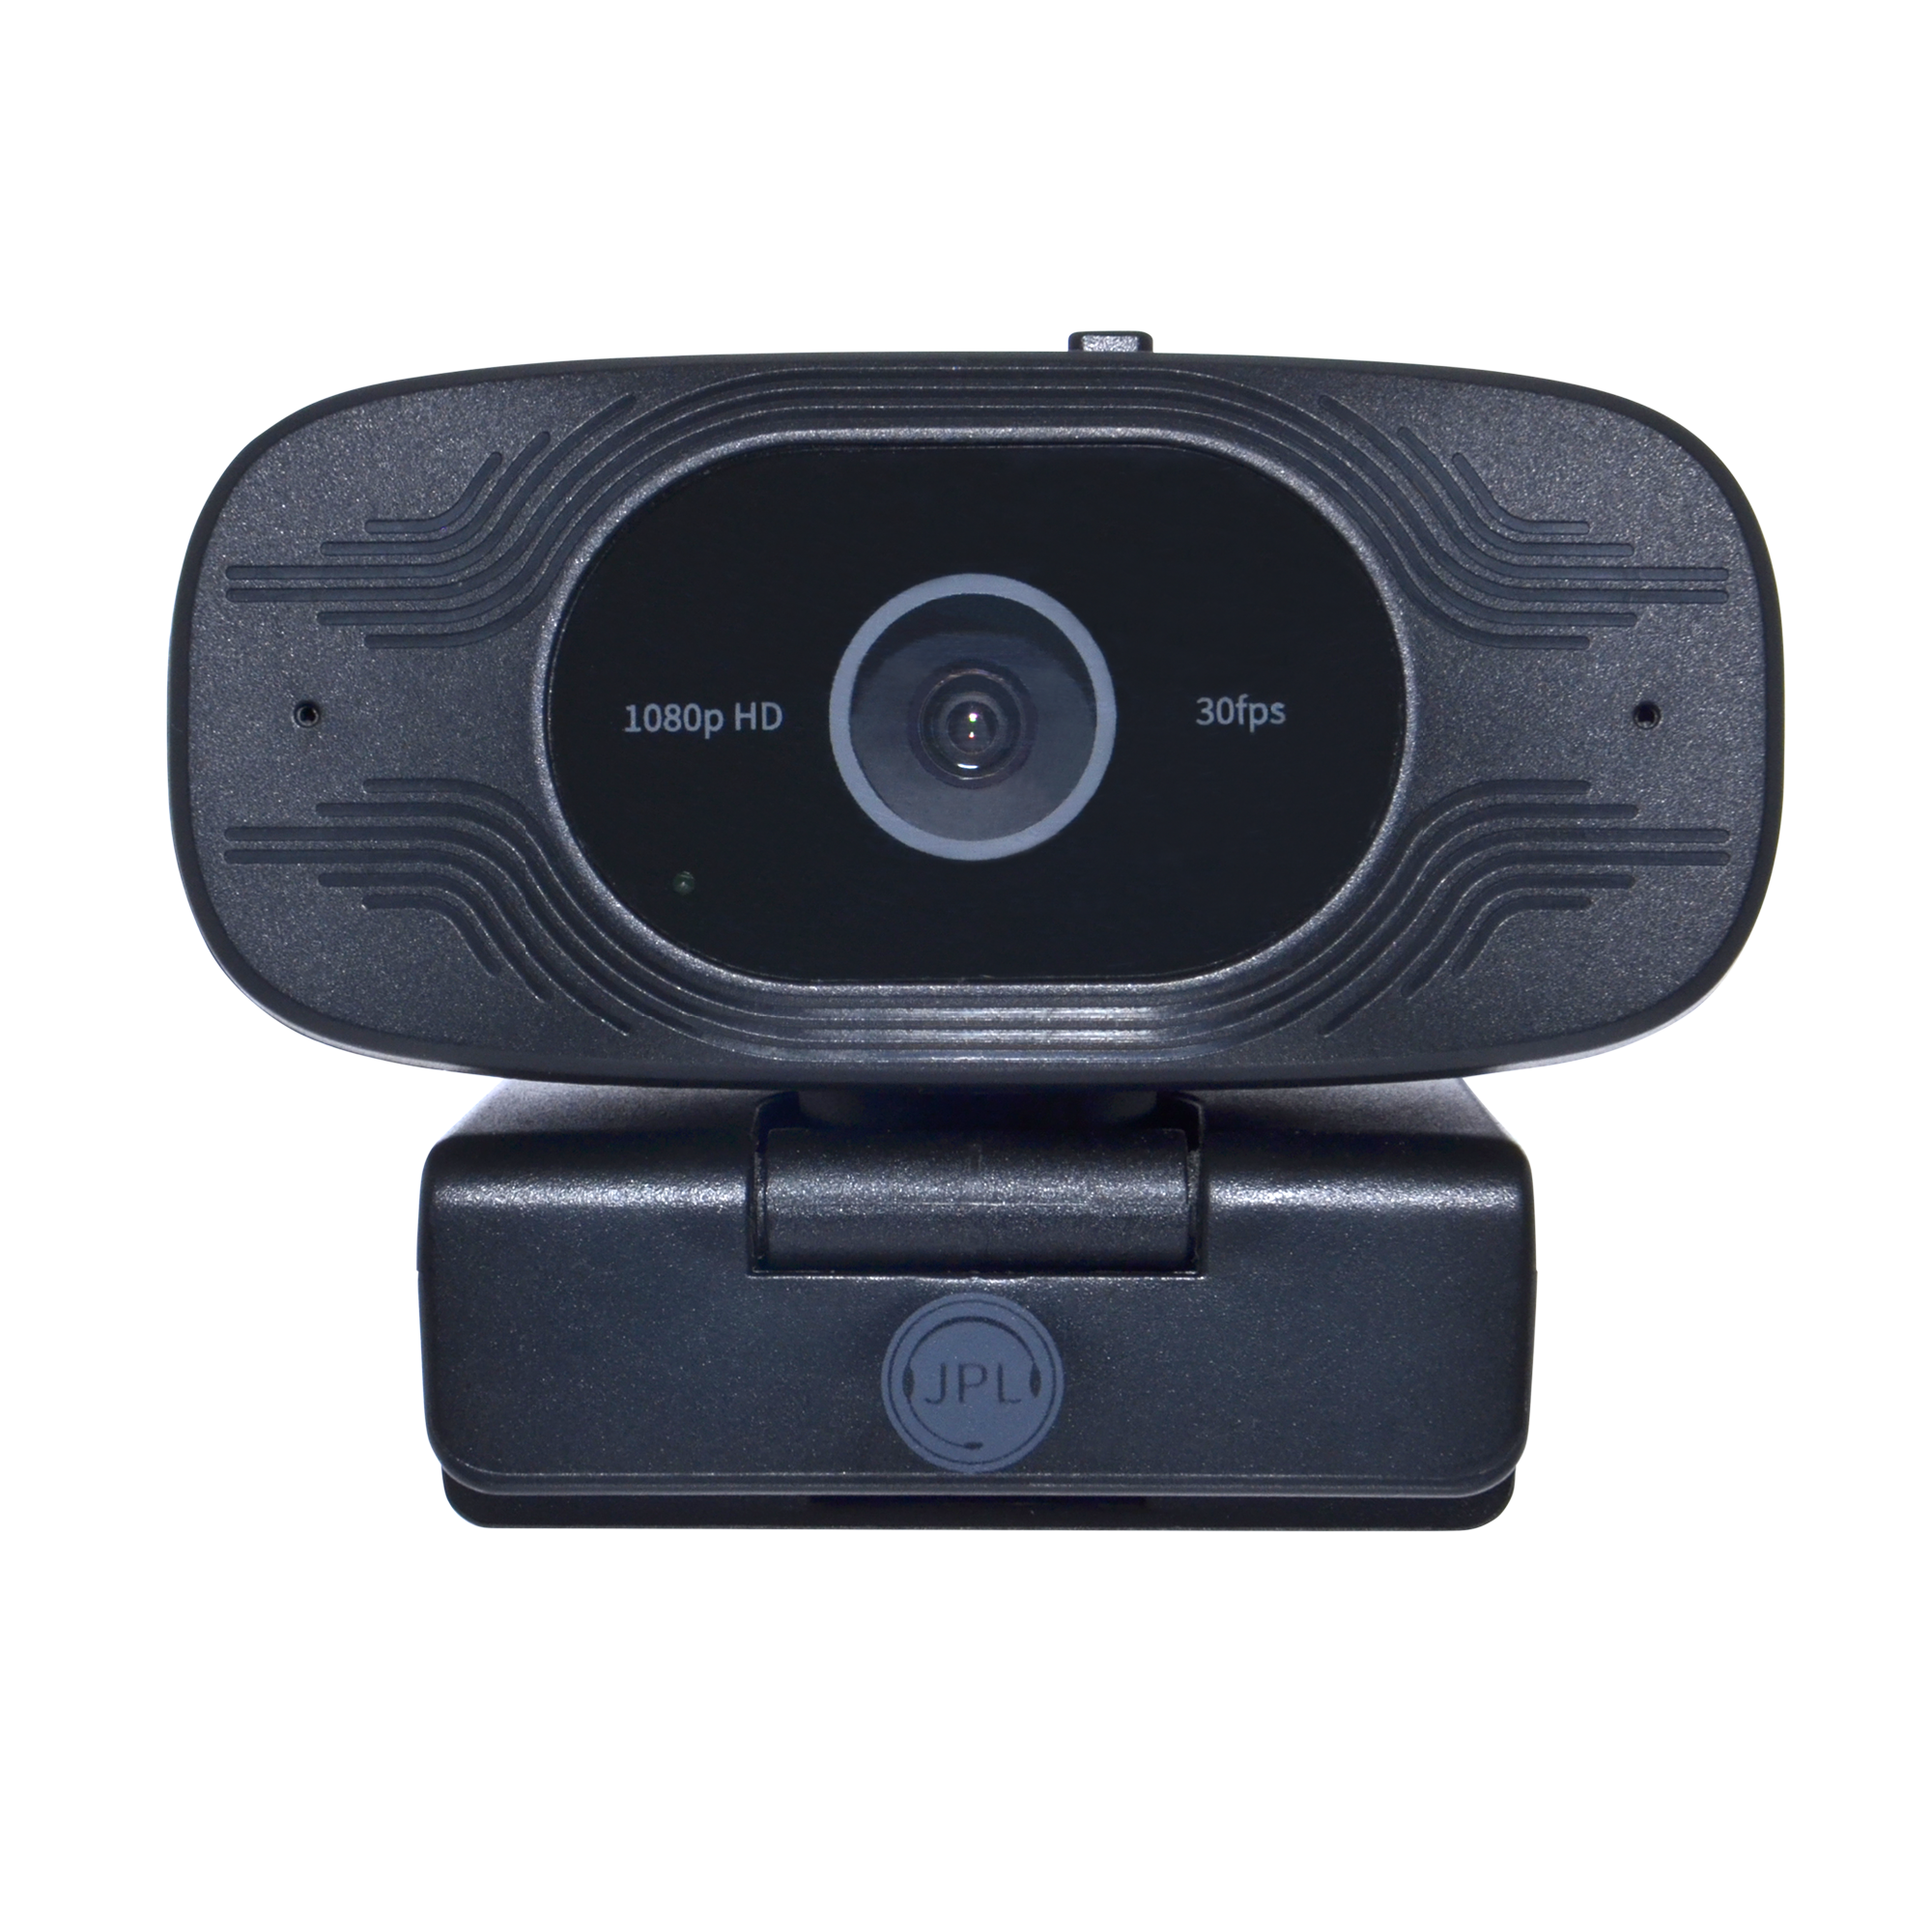 JPL Vision Mini+ USB Webcam, 1080p